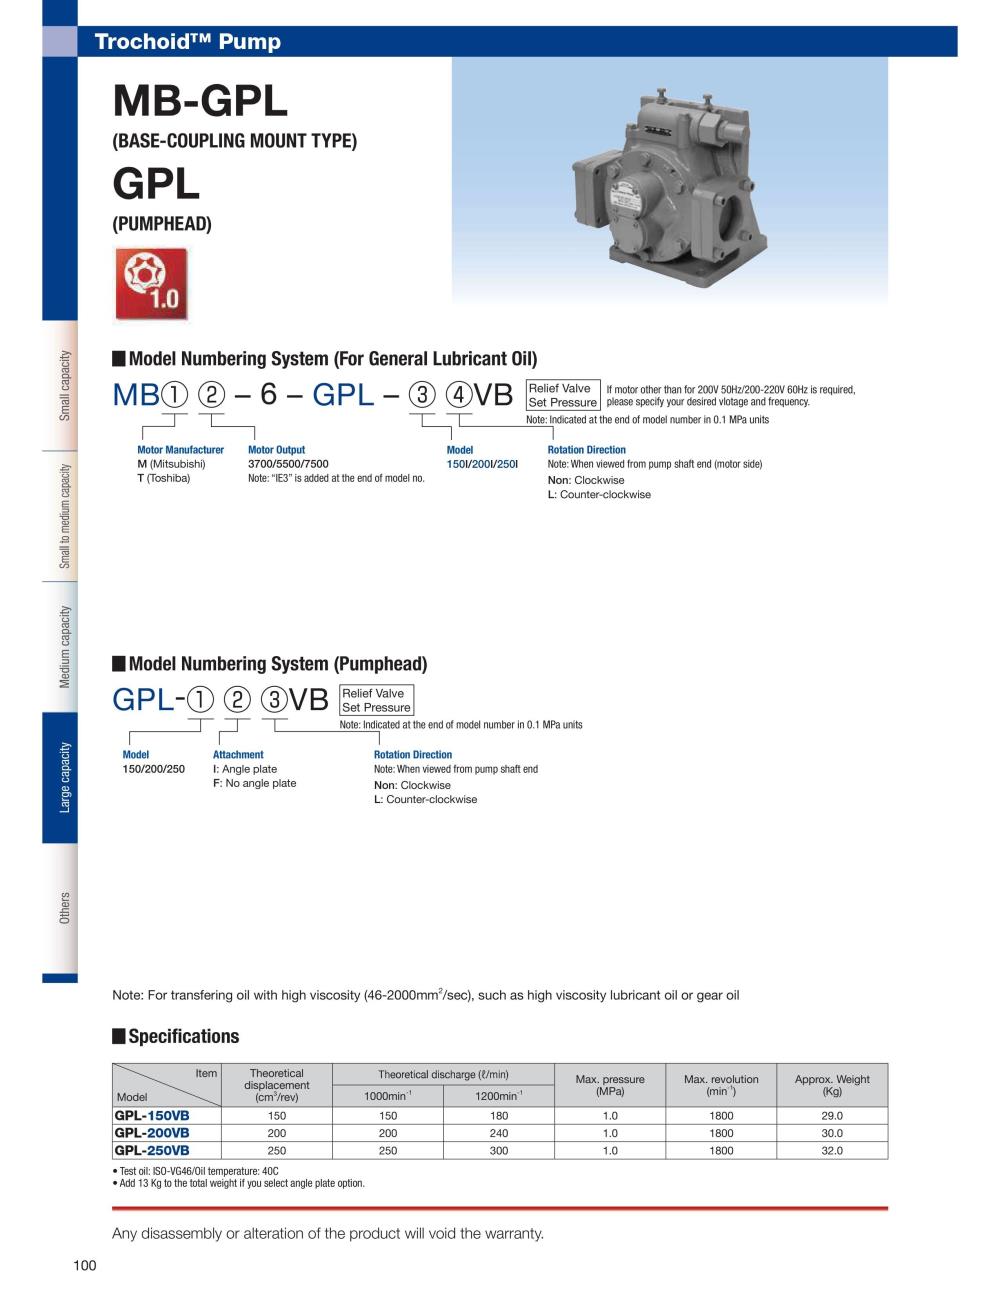 NOP Oil Pump TOP-MBT5500-6-GPL-IVB IE3 Series